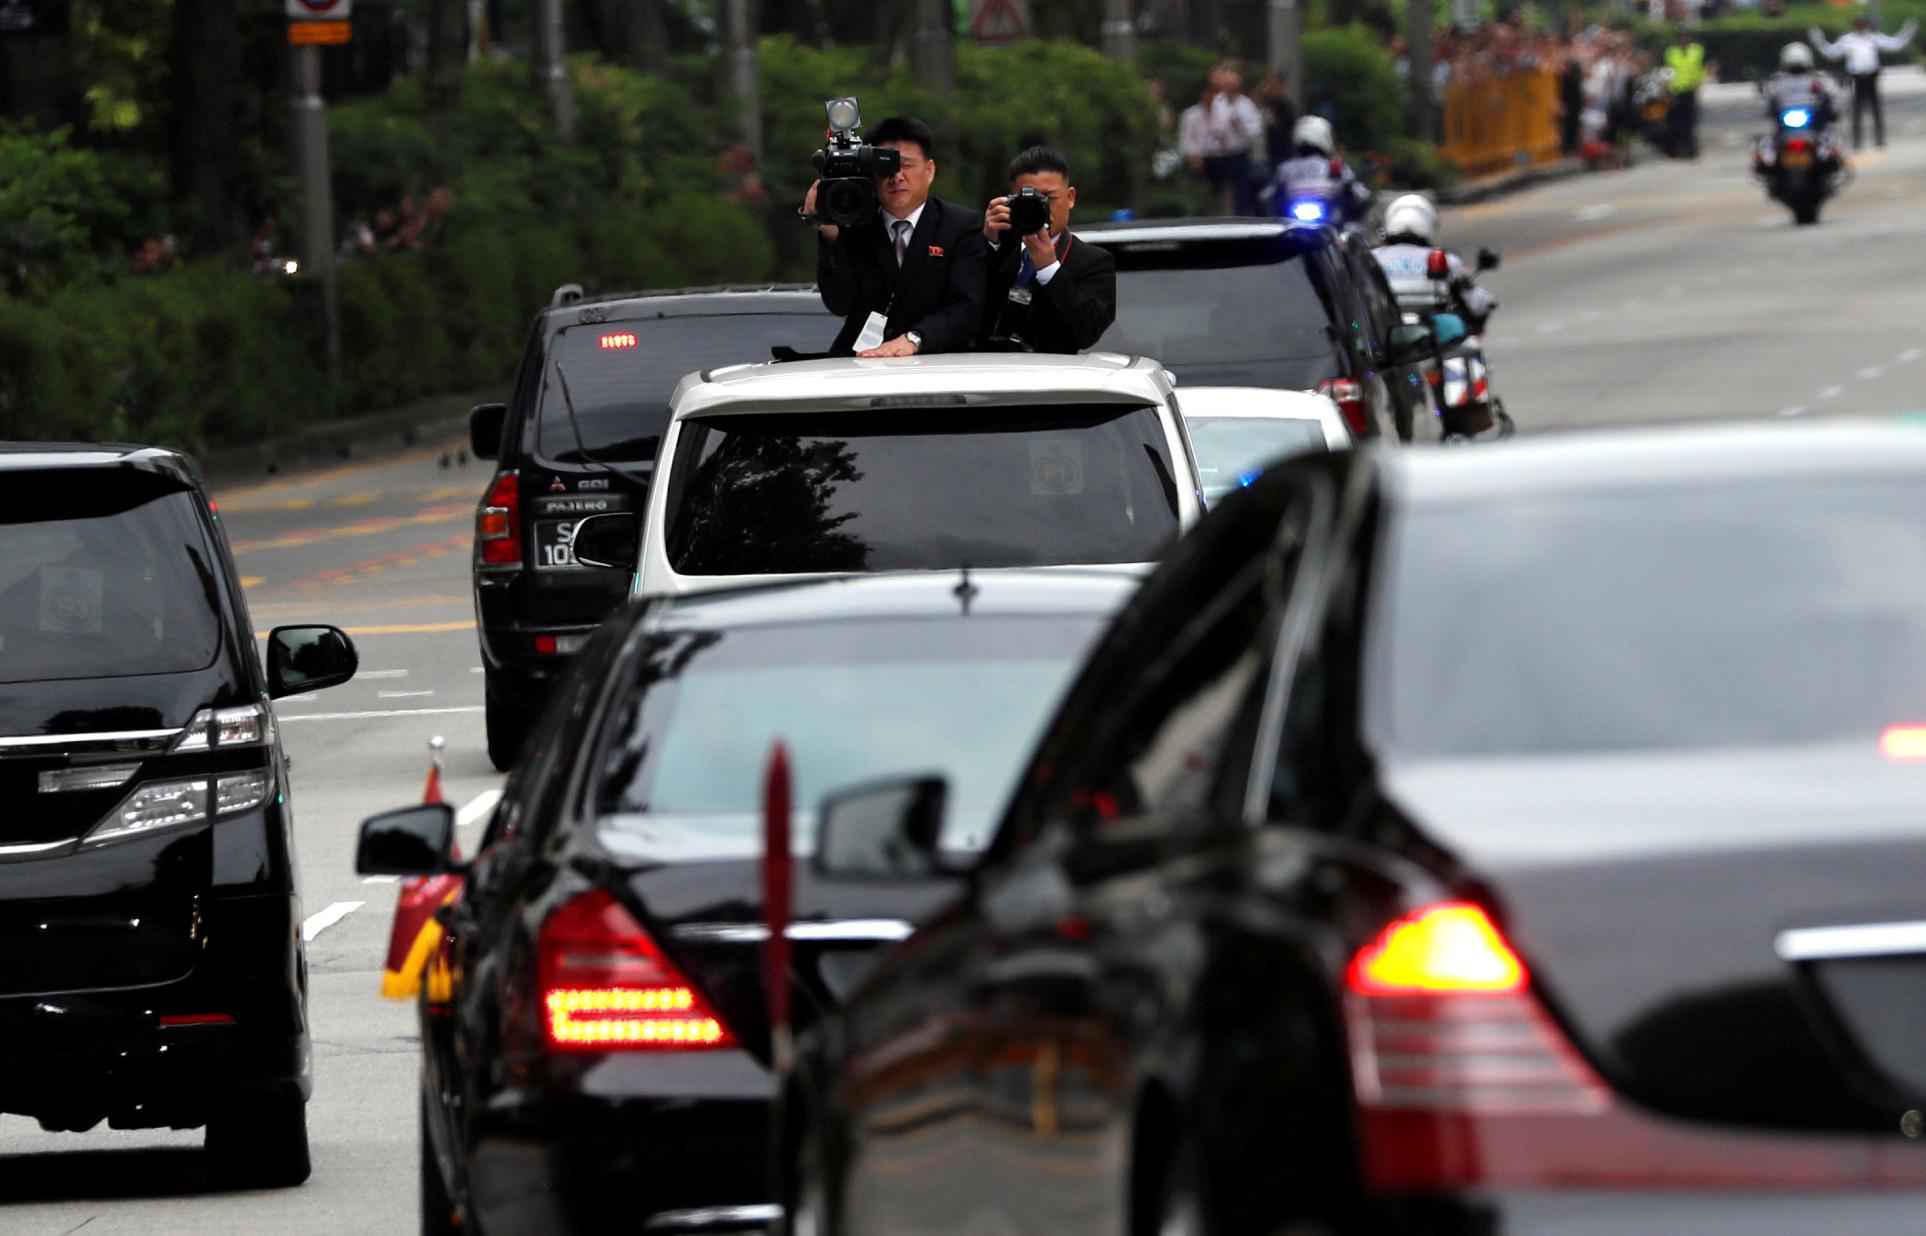 Le convoi du leader nord-coréen Kim Jong-un en route pour sa rencontre avec le président américain Donald Trump à Singapour. [Reuters - Tyrone Siu]